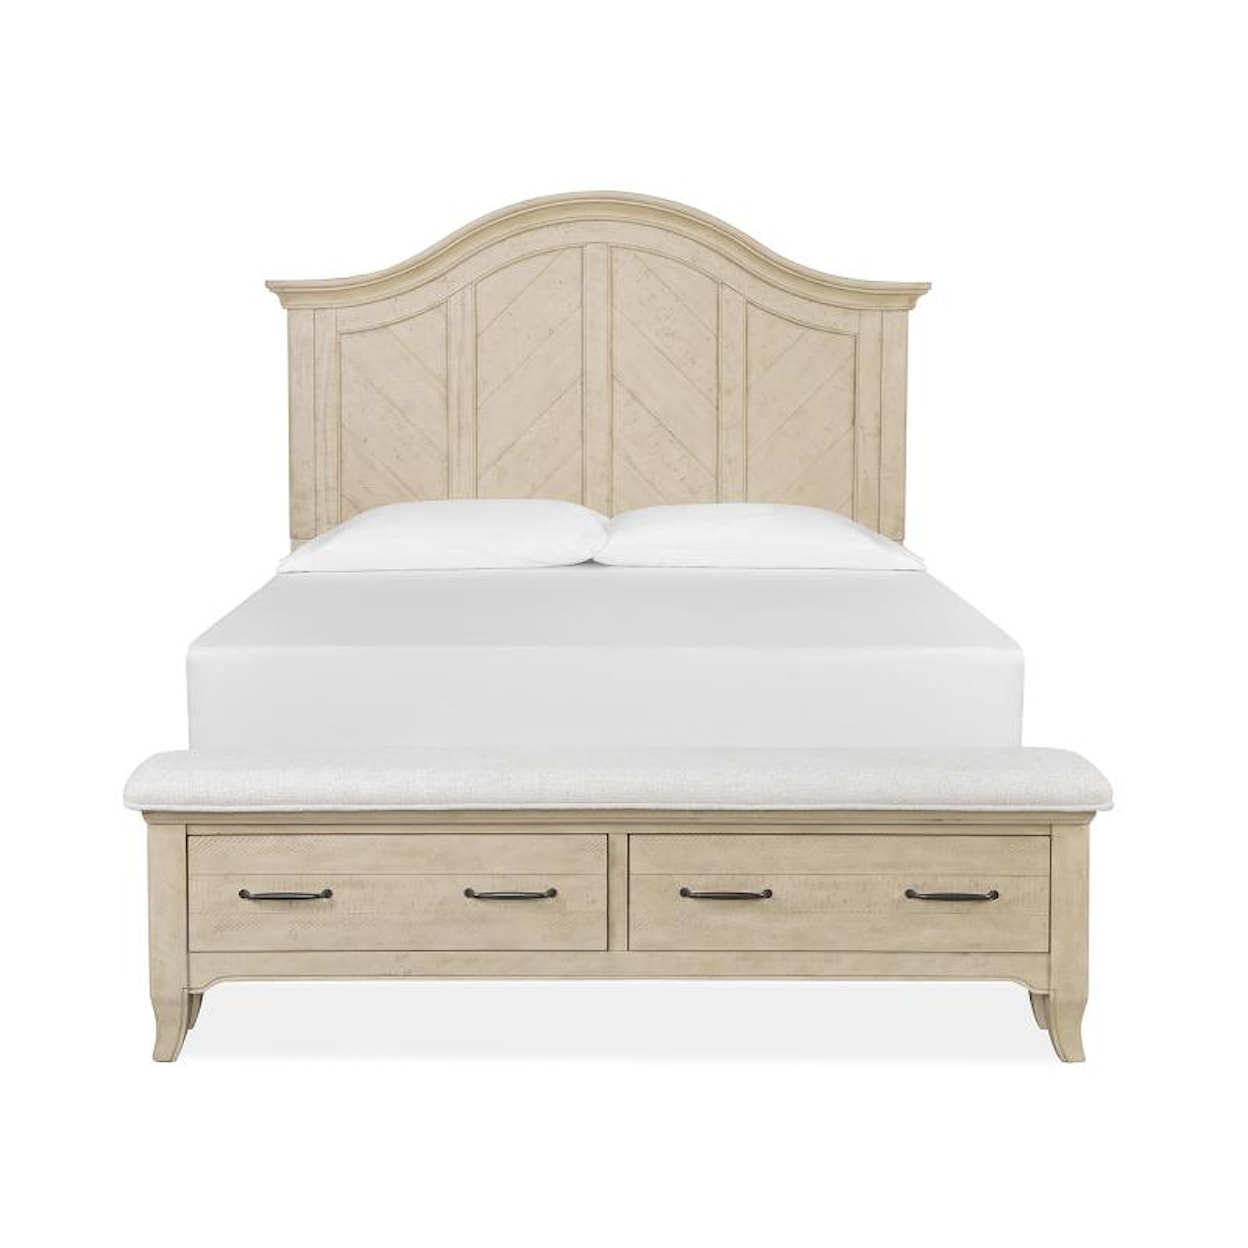 Magnussen Home Harlow Bedroom Queen Upholstered Storage Bed